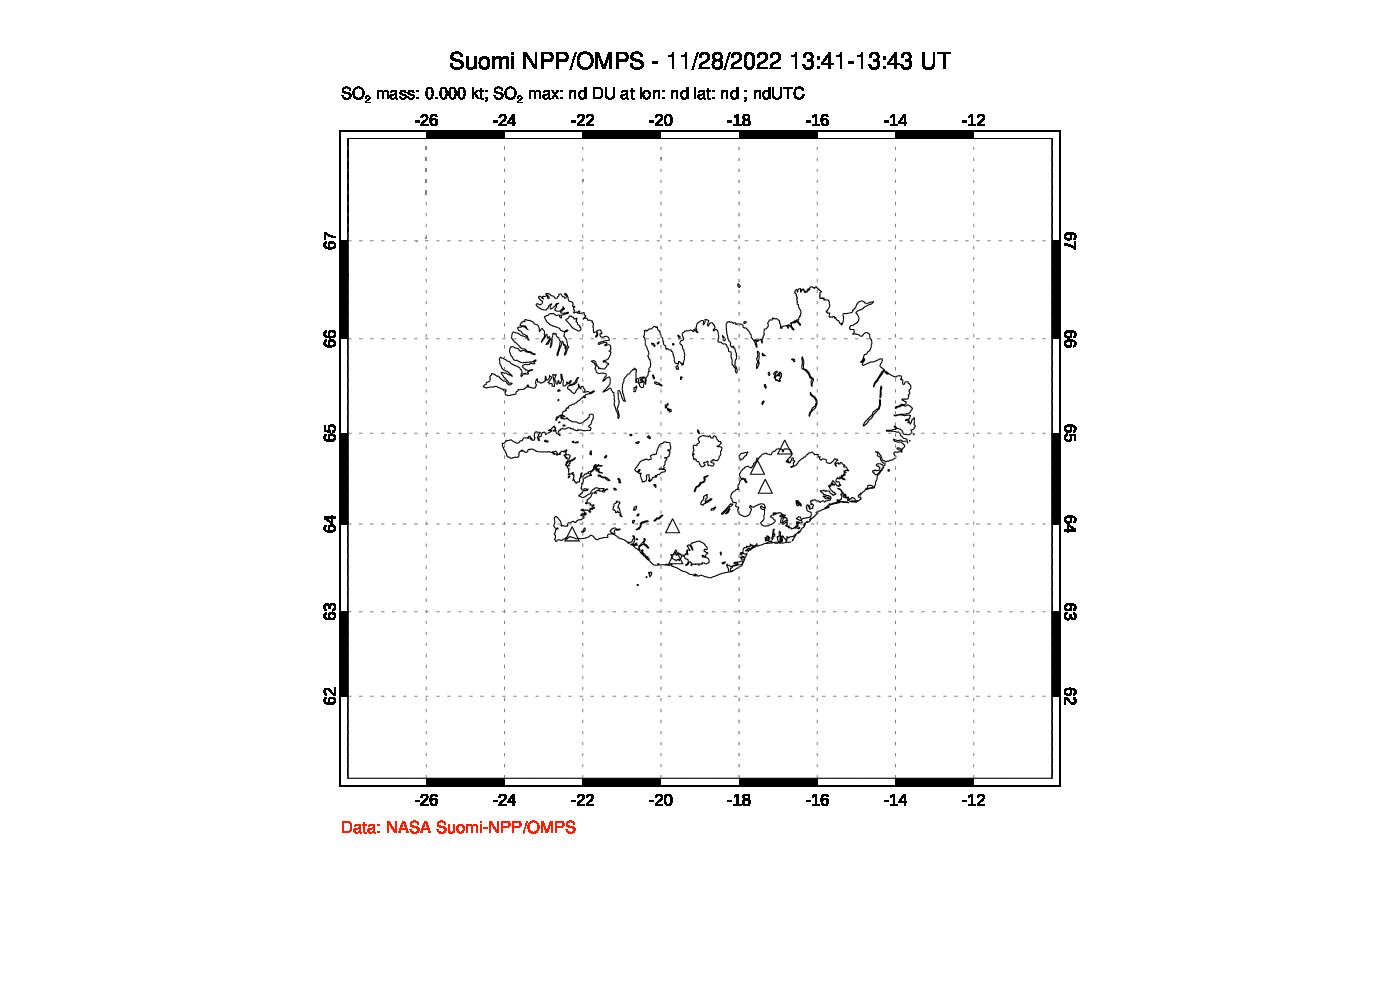 A sulfur dioxide image over Iceland on Nov 28, 2022.